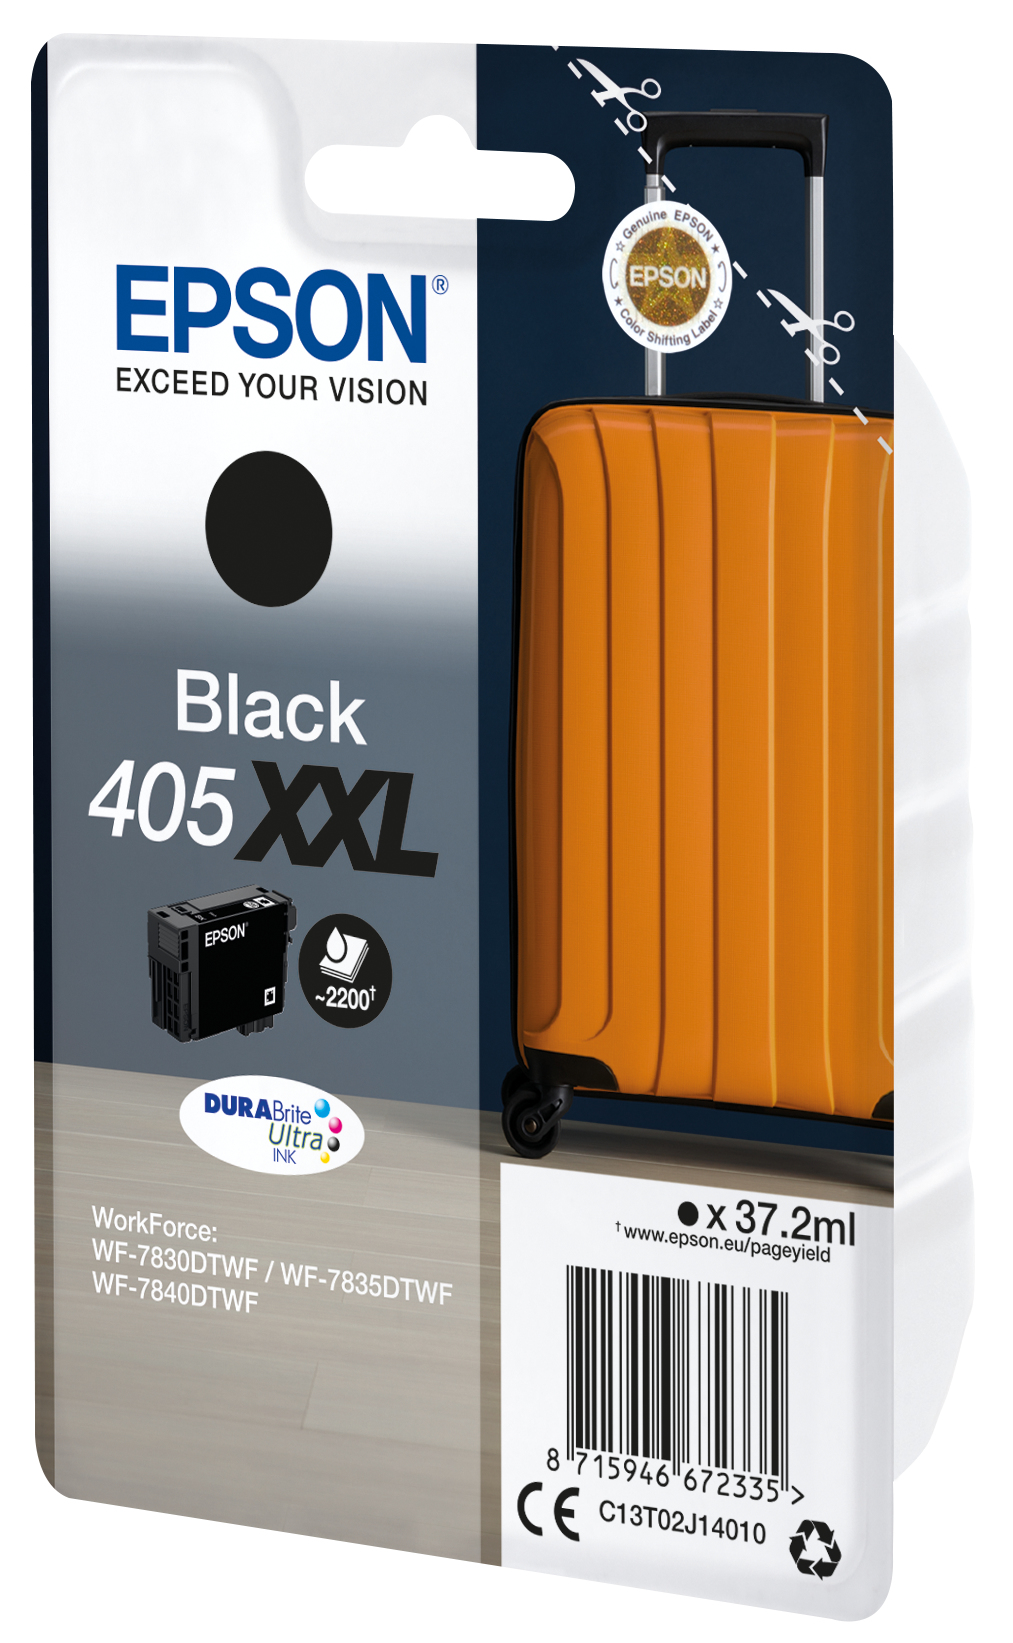 Epson 405XXL Durabrite Ultra